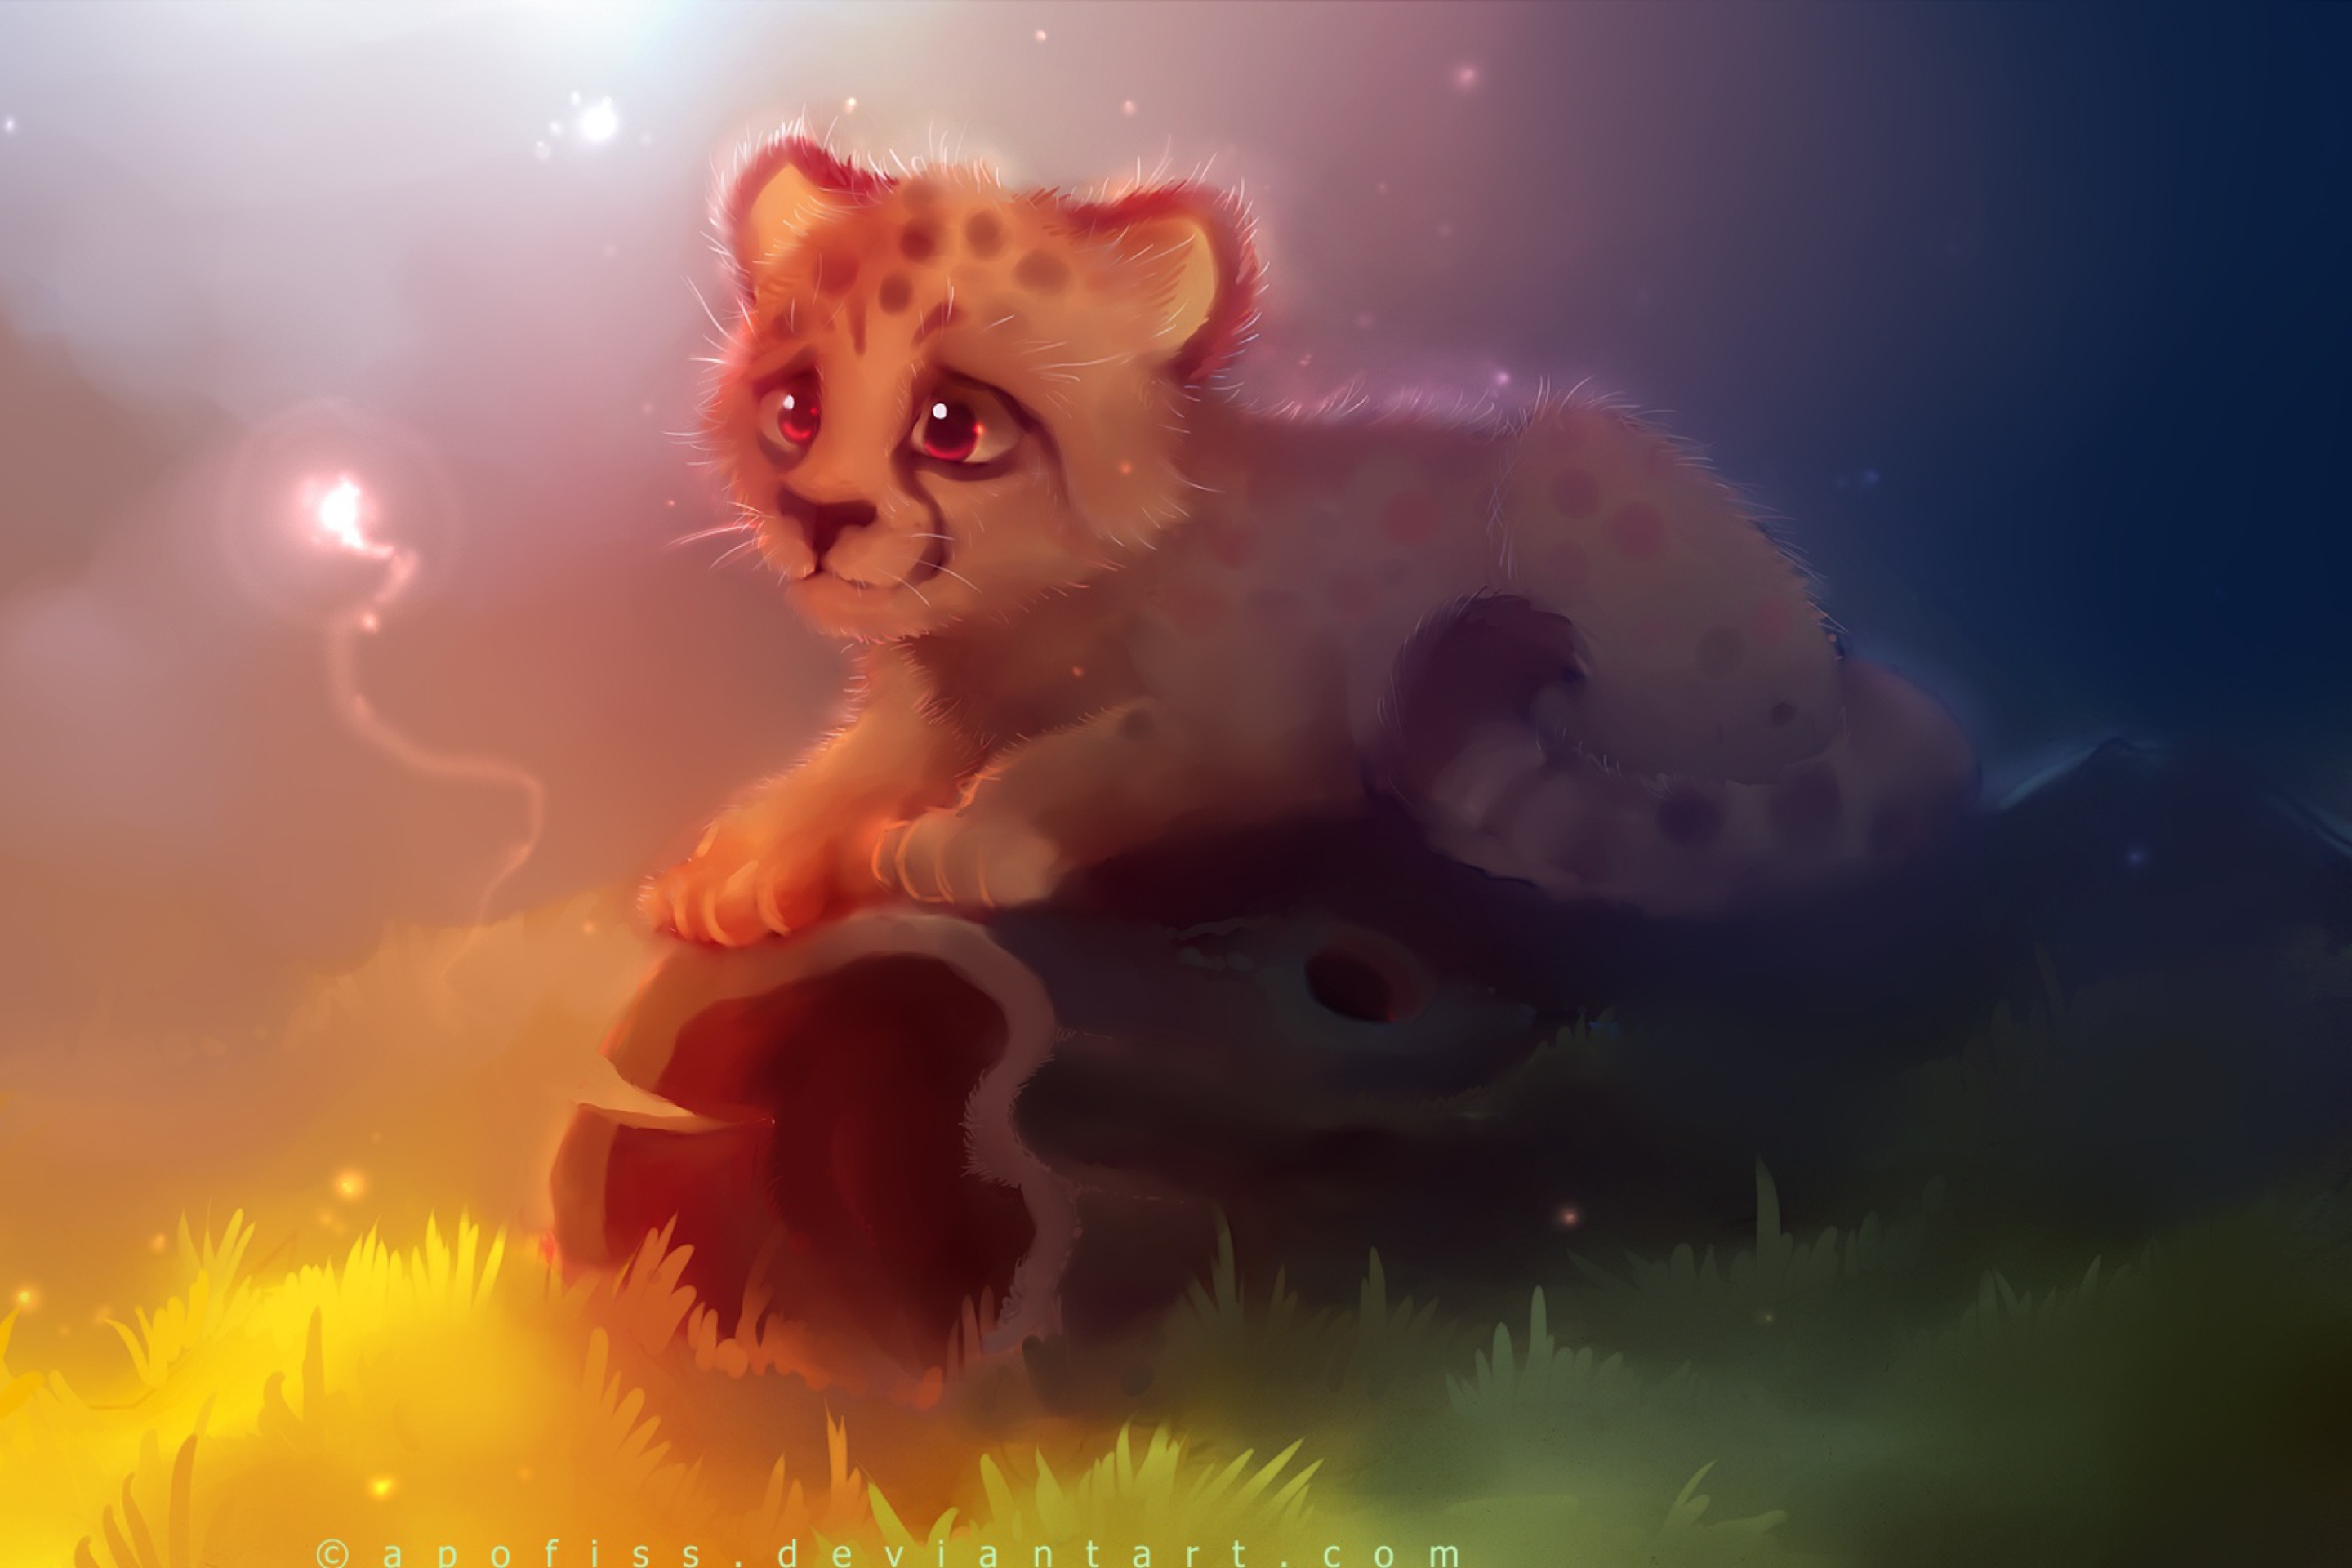 Das Cute Cheetah Painting Wallpaper 2880x1920